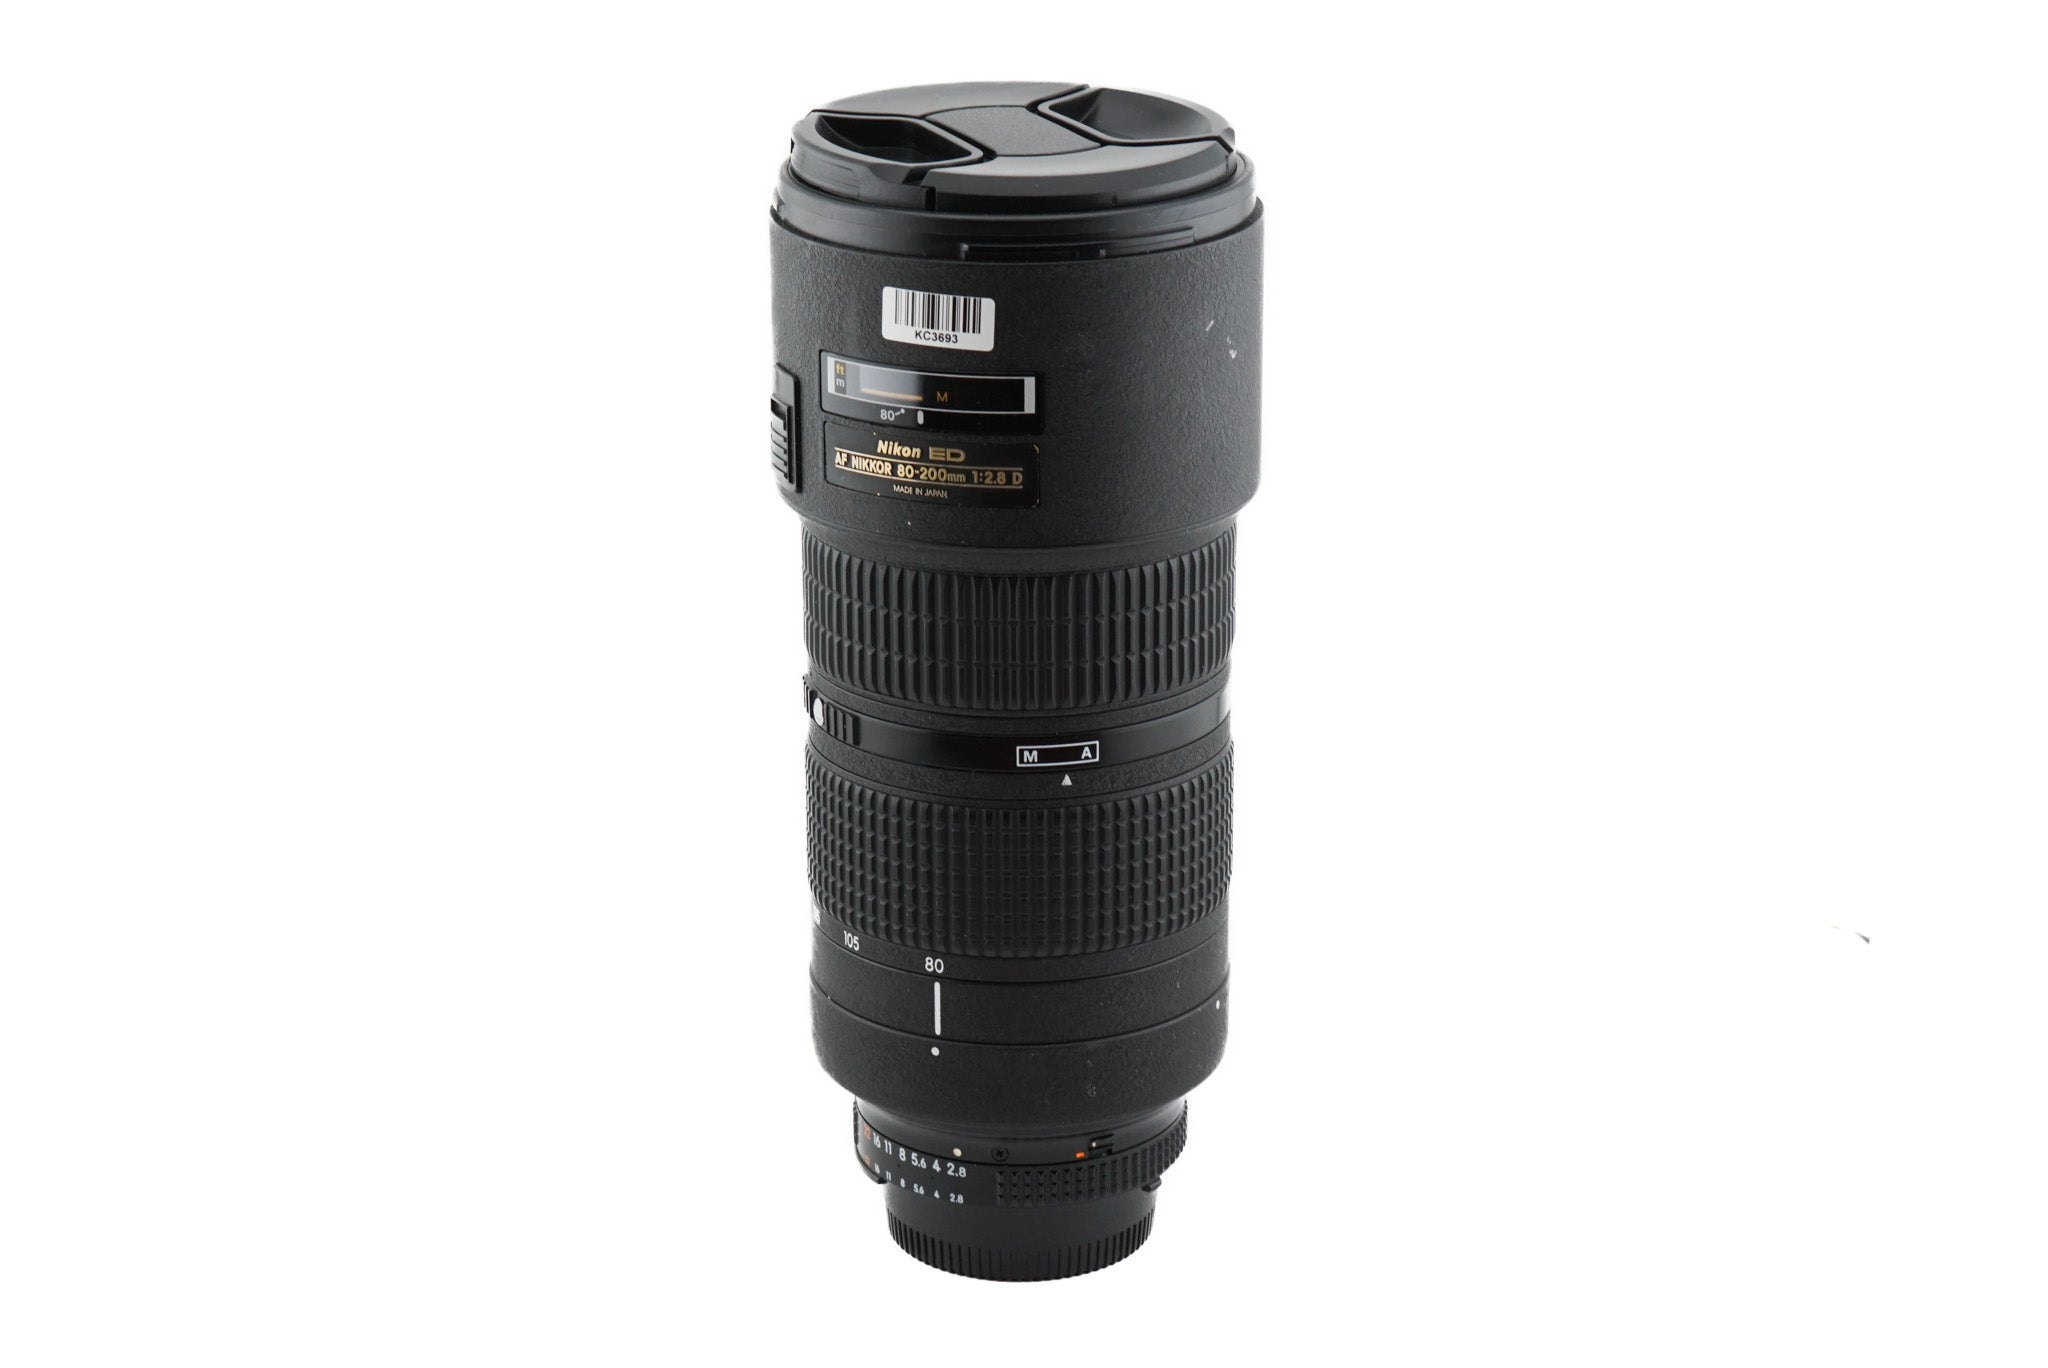 Nikon 80-200mm f2.8 D ED AF Zoom Nikkor (Mark III / Dual Ring)